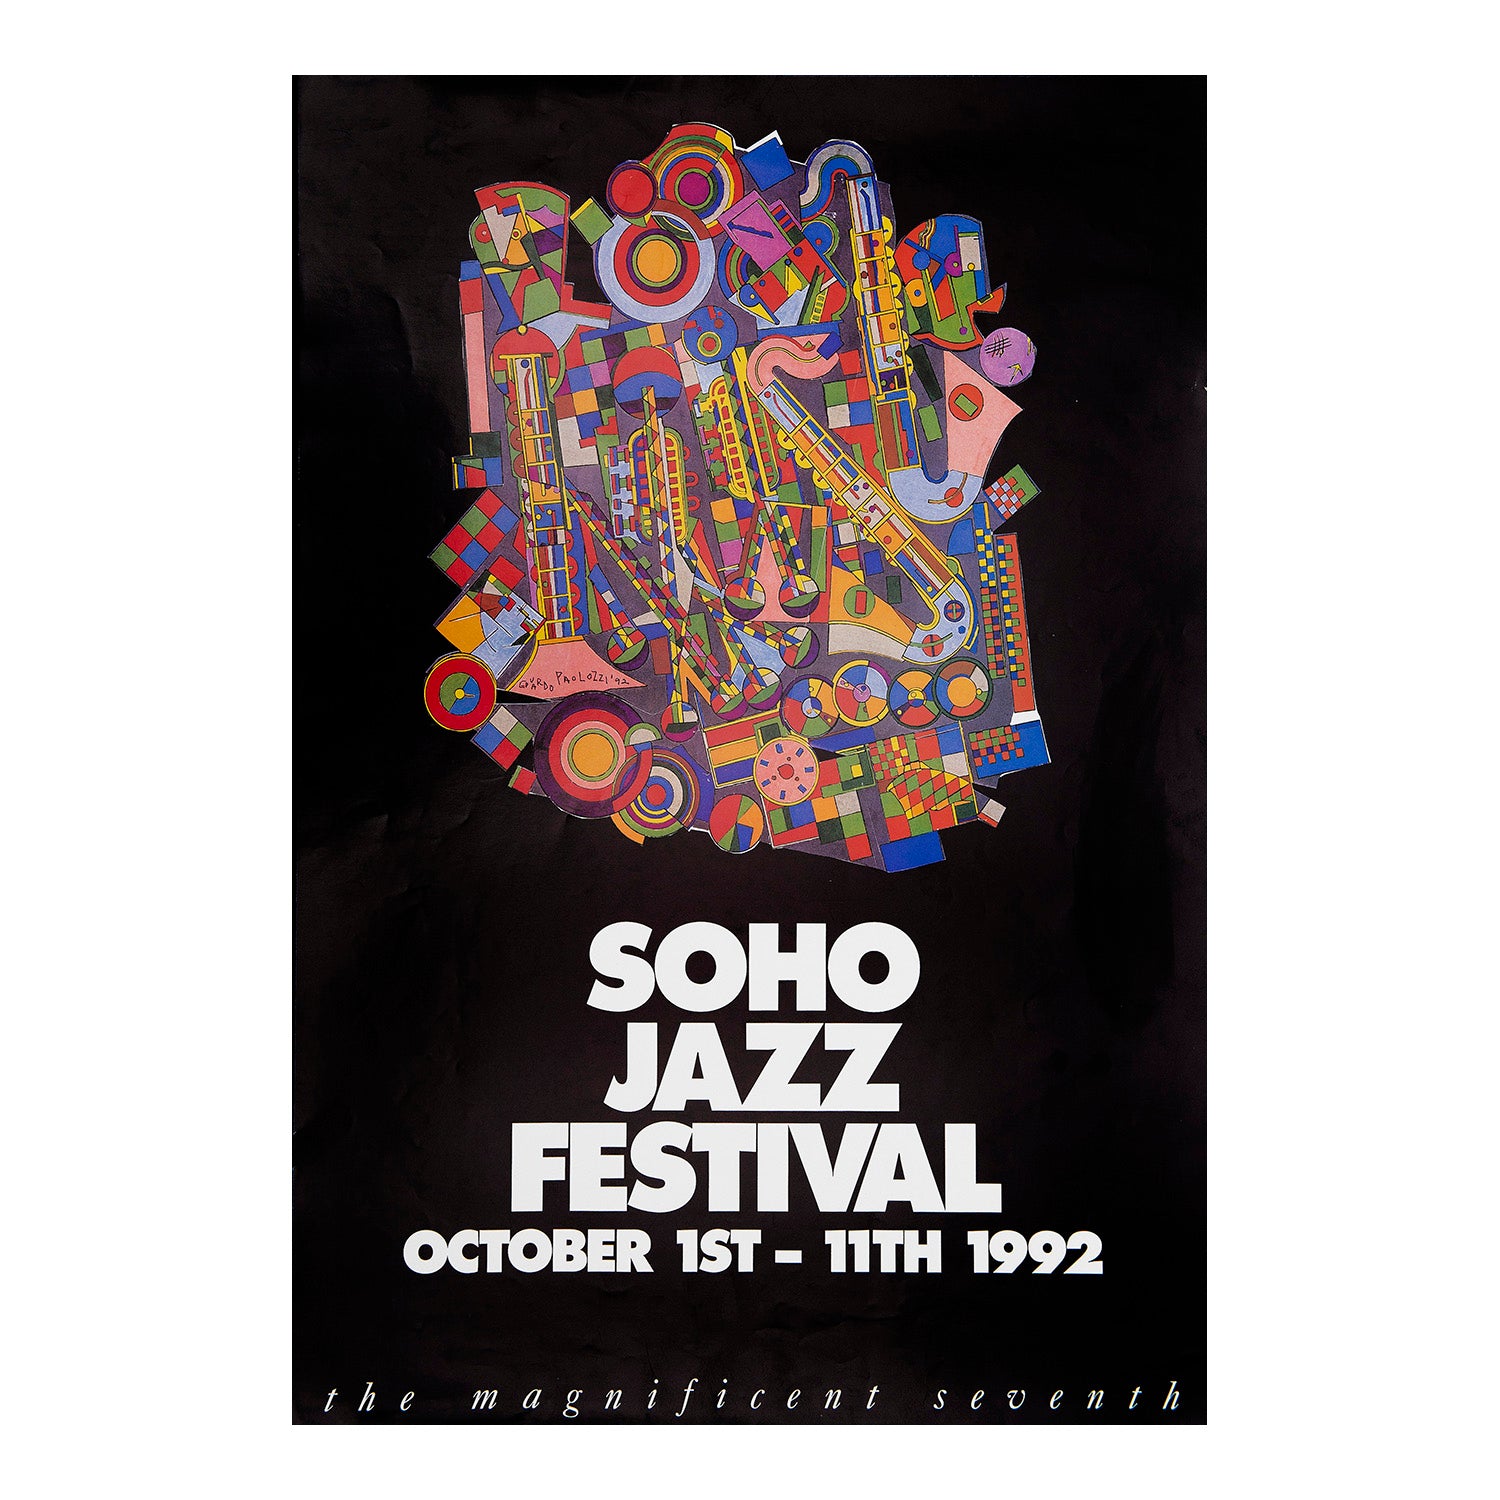  original poster for the 1992 Soho Jazz Festival designed by the ‘godfather’ of pop art, Eduardo Paolozzi